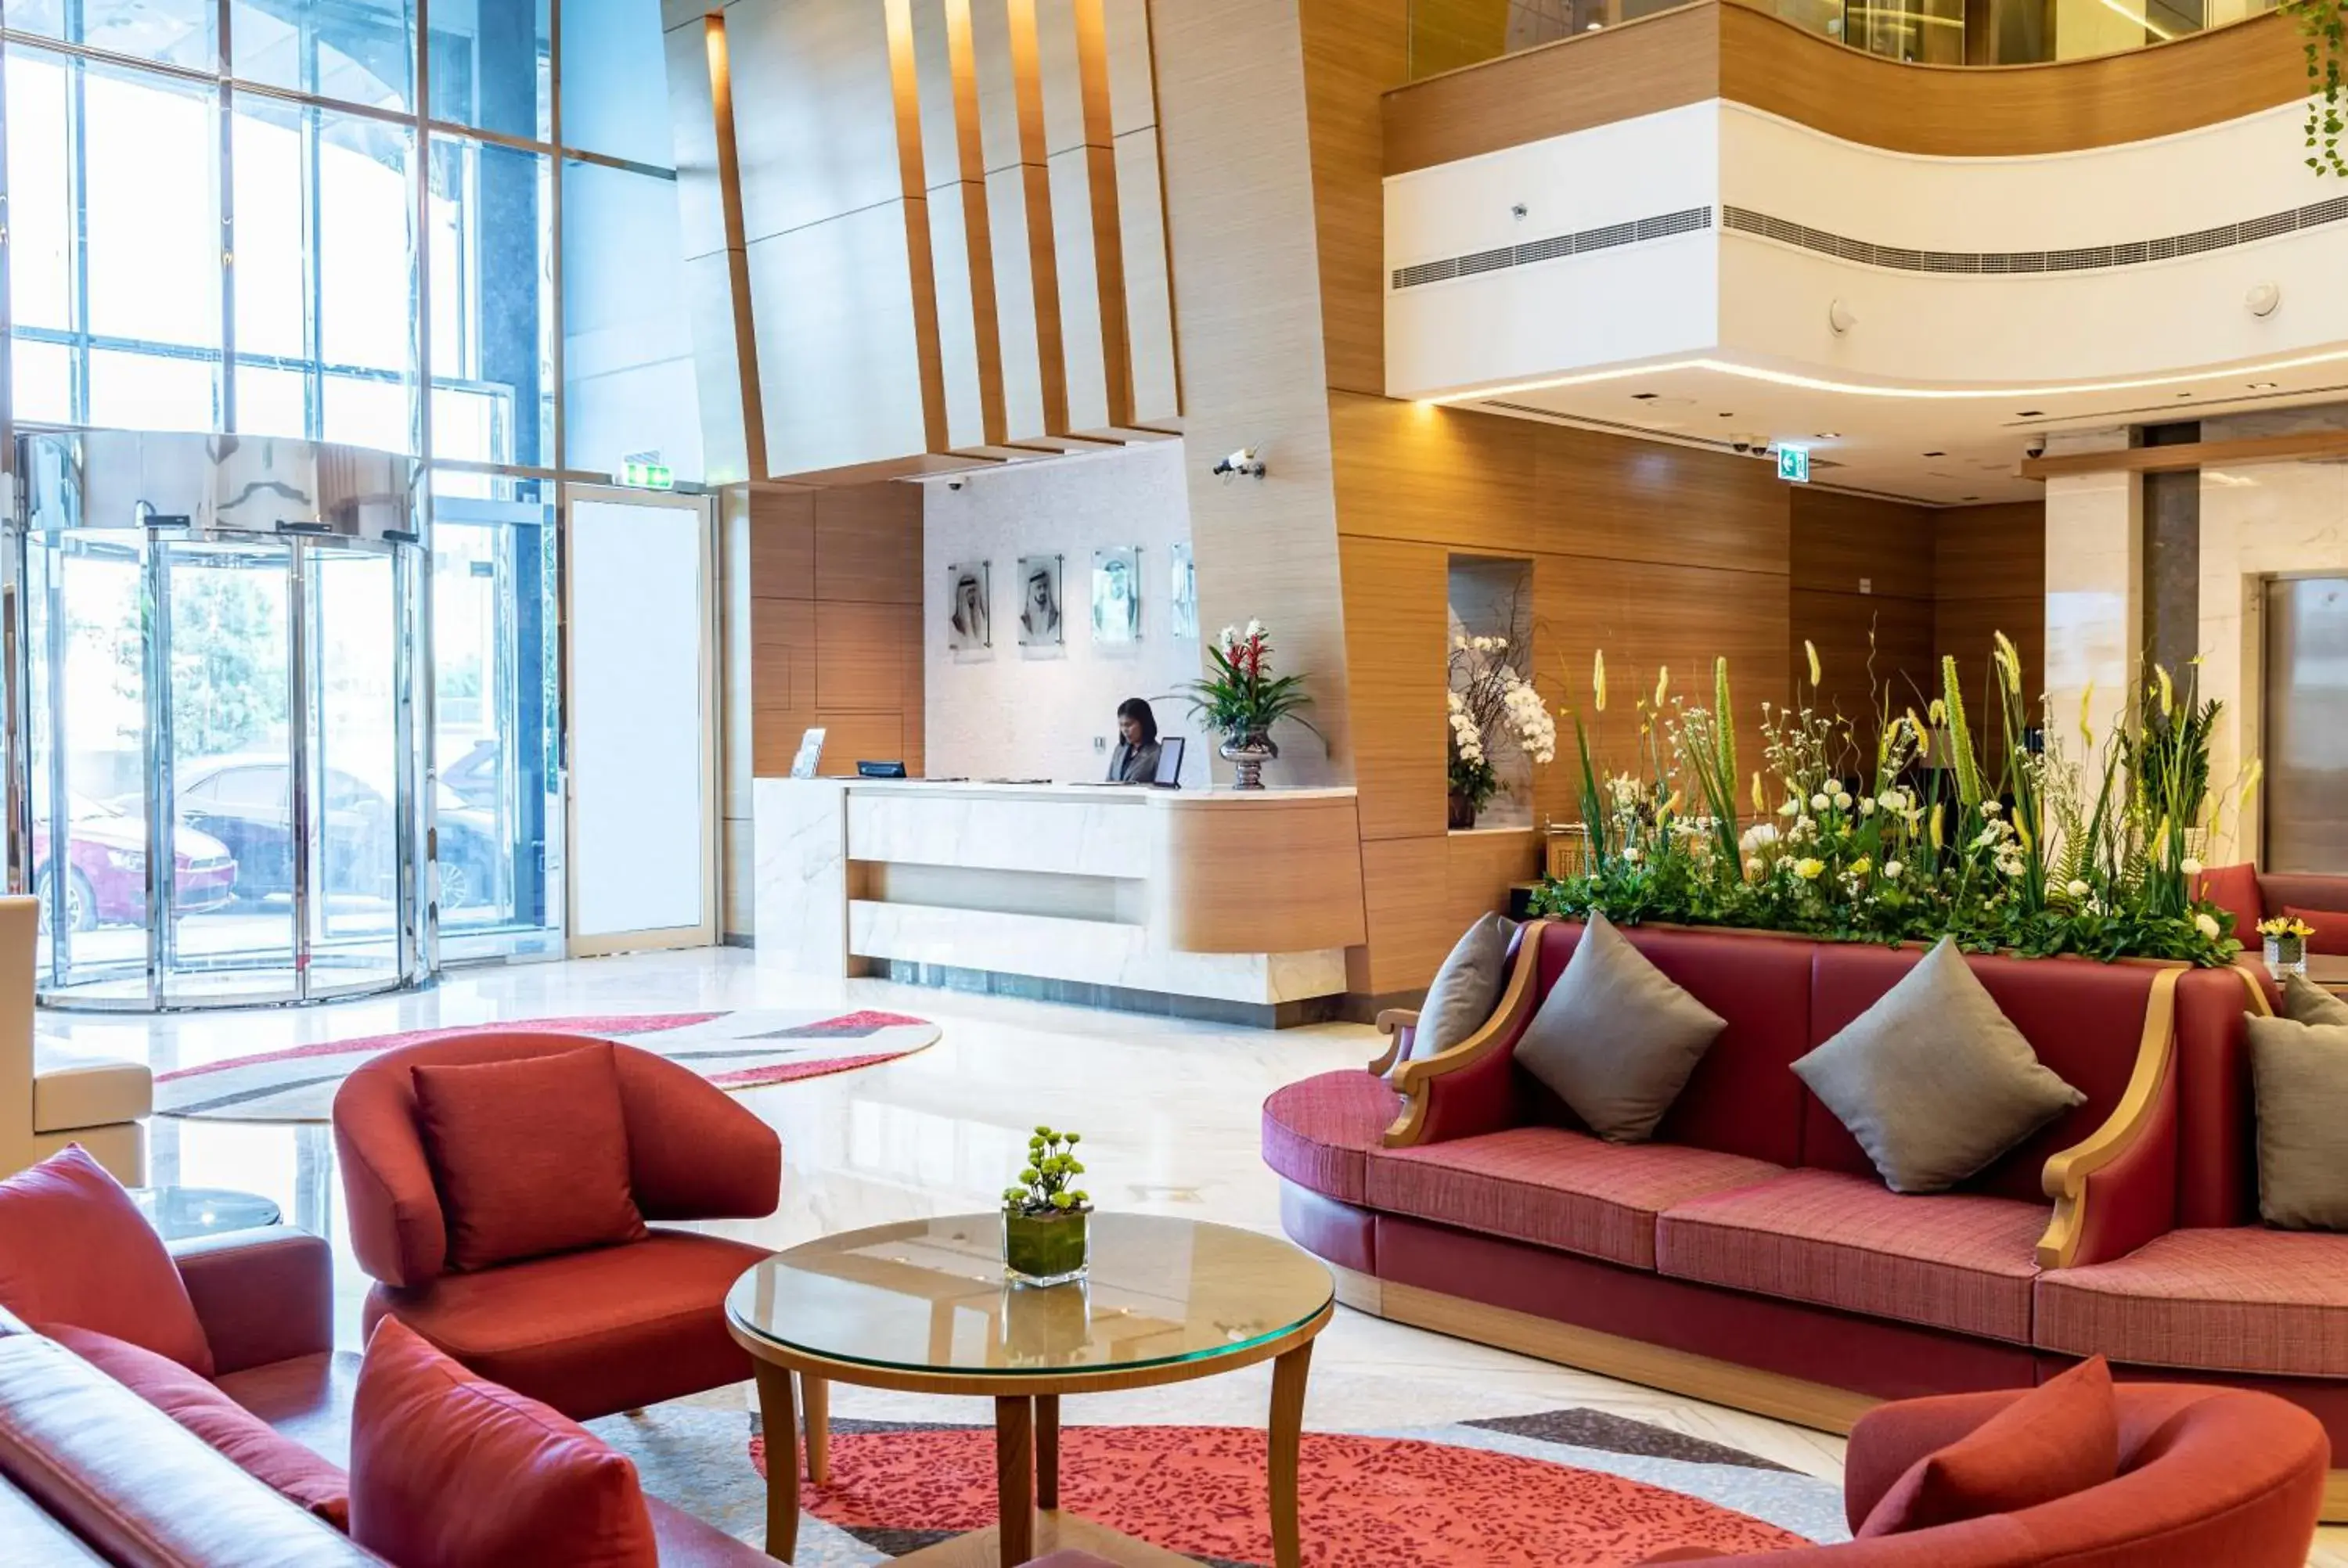 Lobby or reception, Lobby/Reception in Gulf Inn Hotel Al Nasr Formerly Roda Links Al Nasr